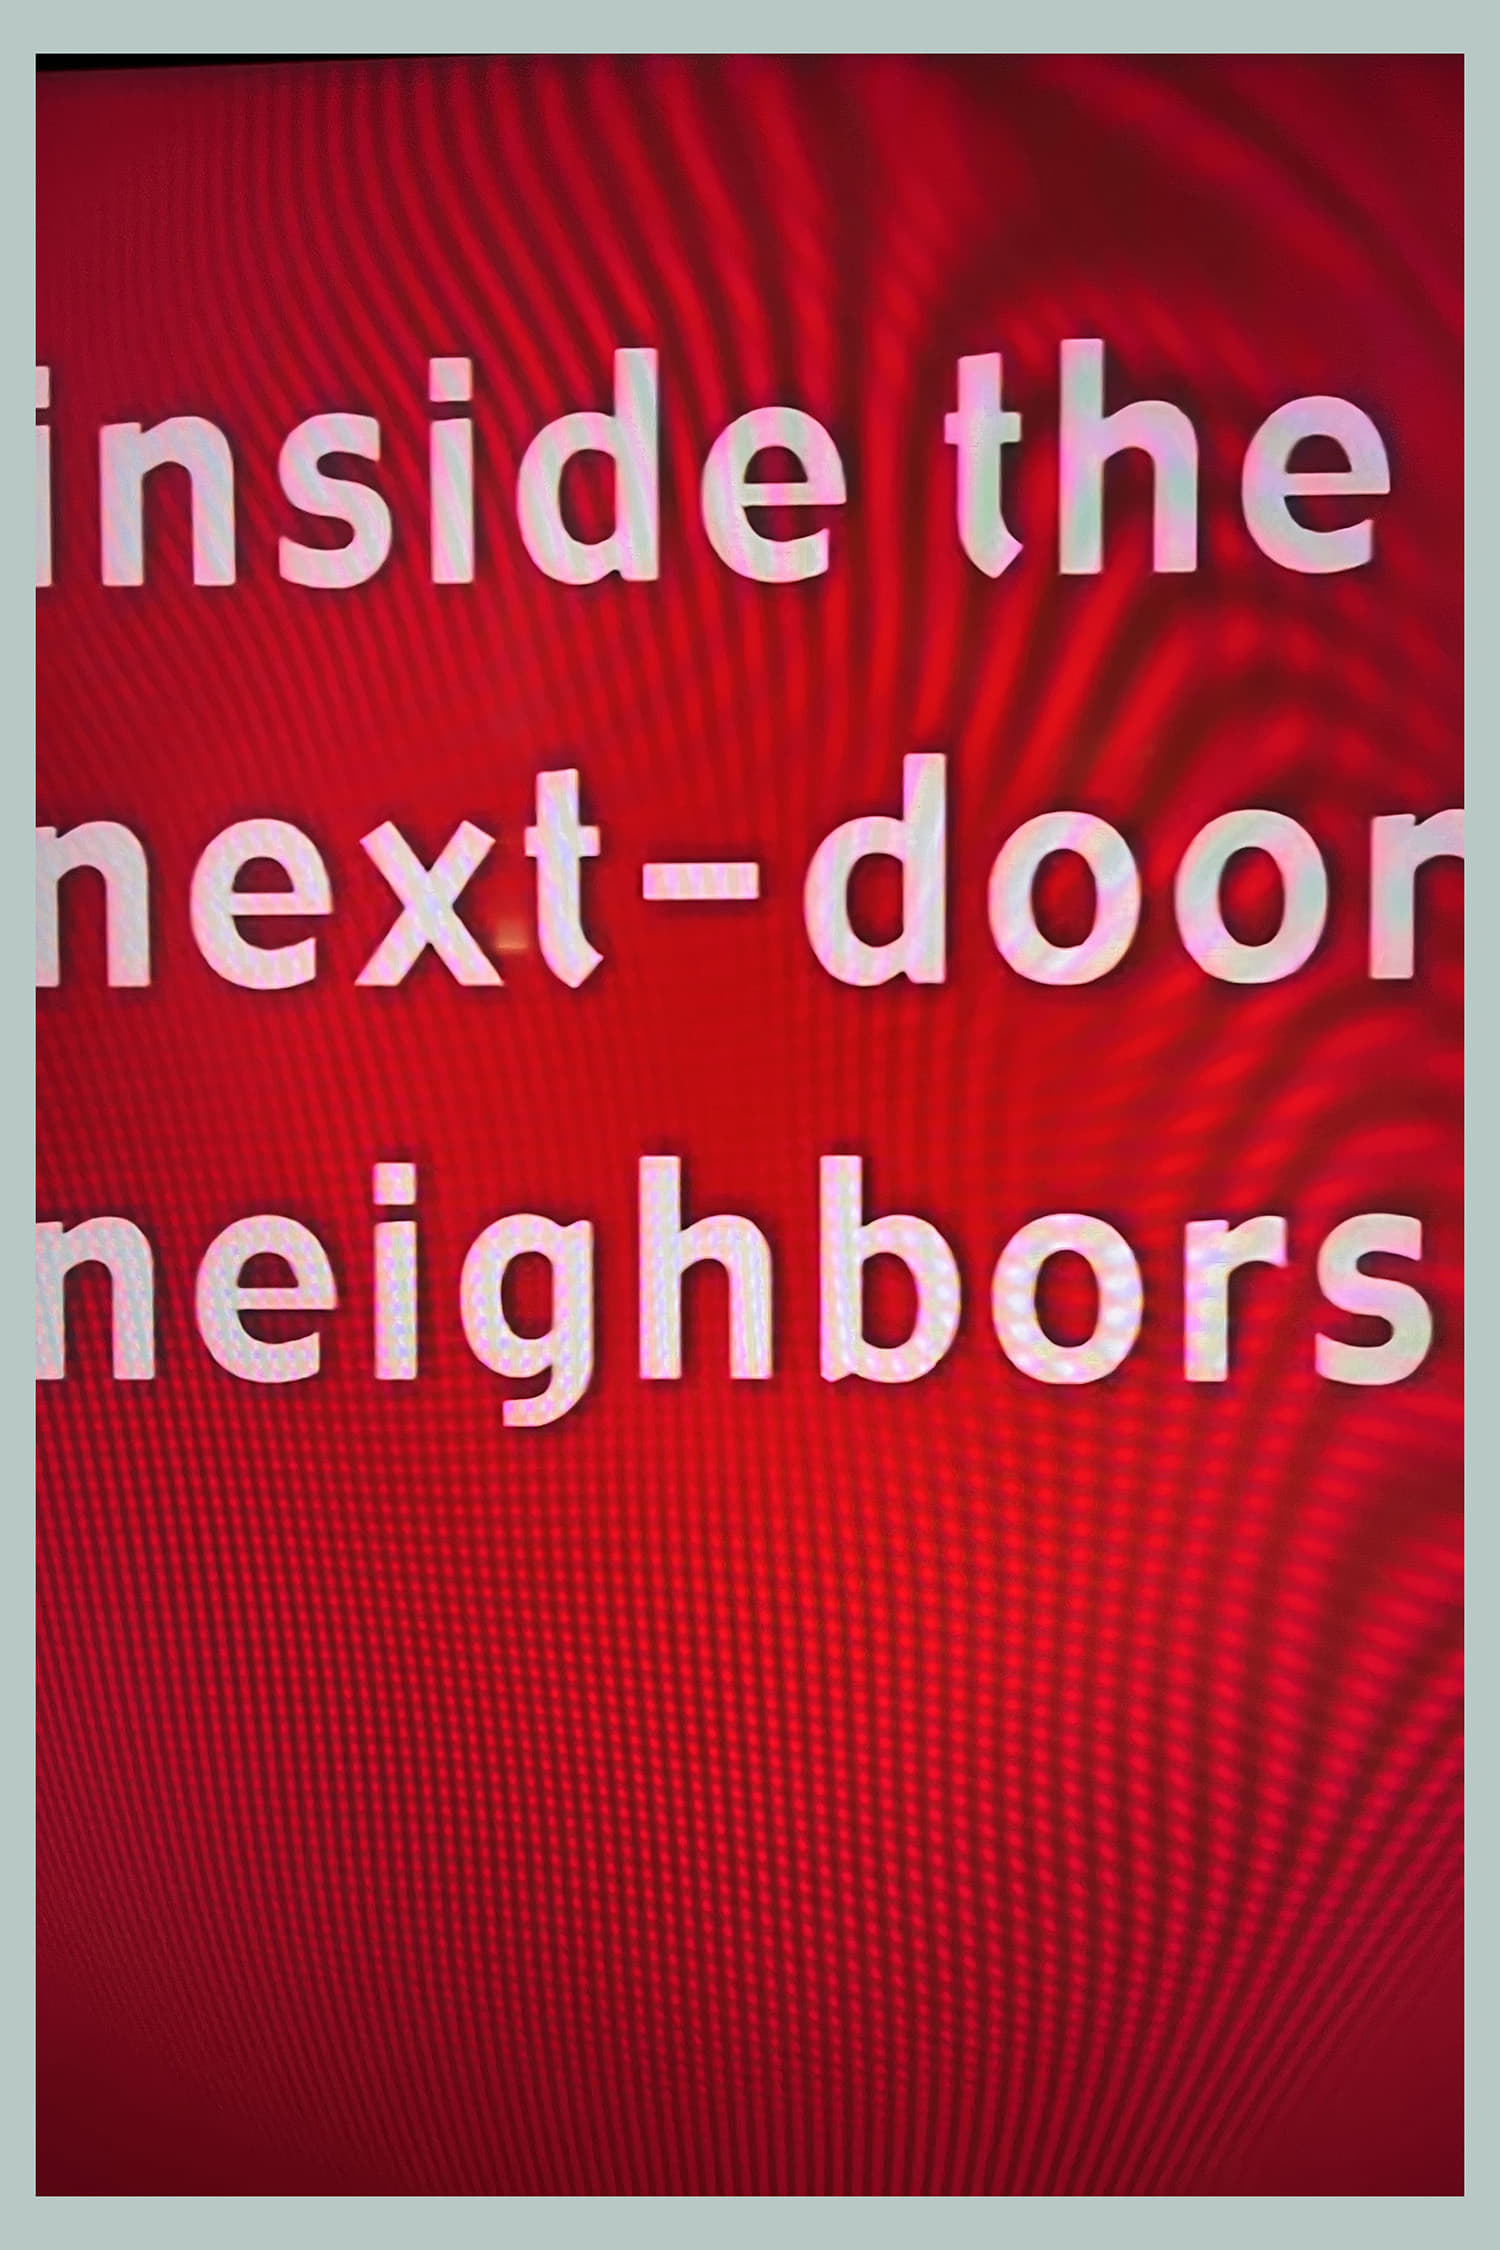 Inside the Next-Door Neighbors